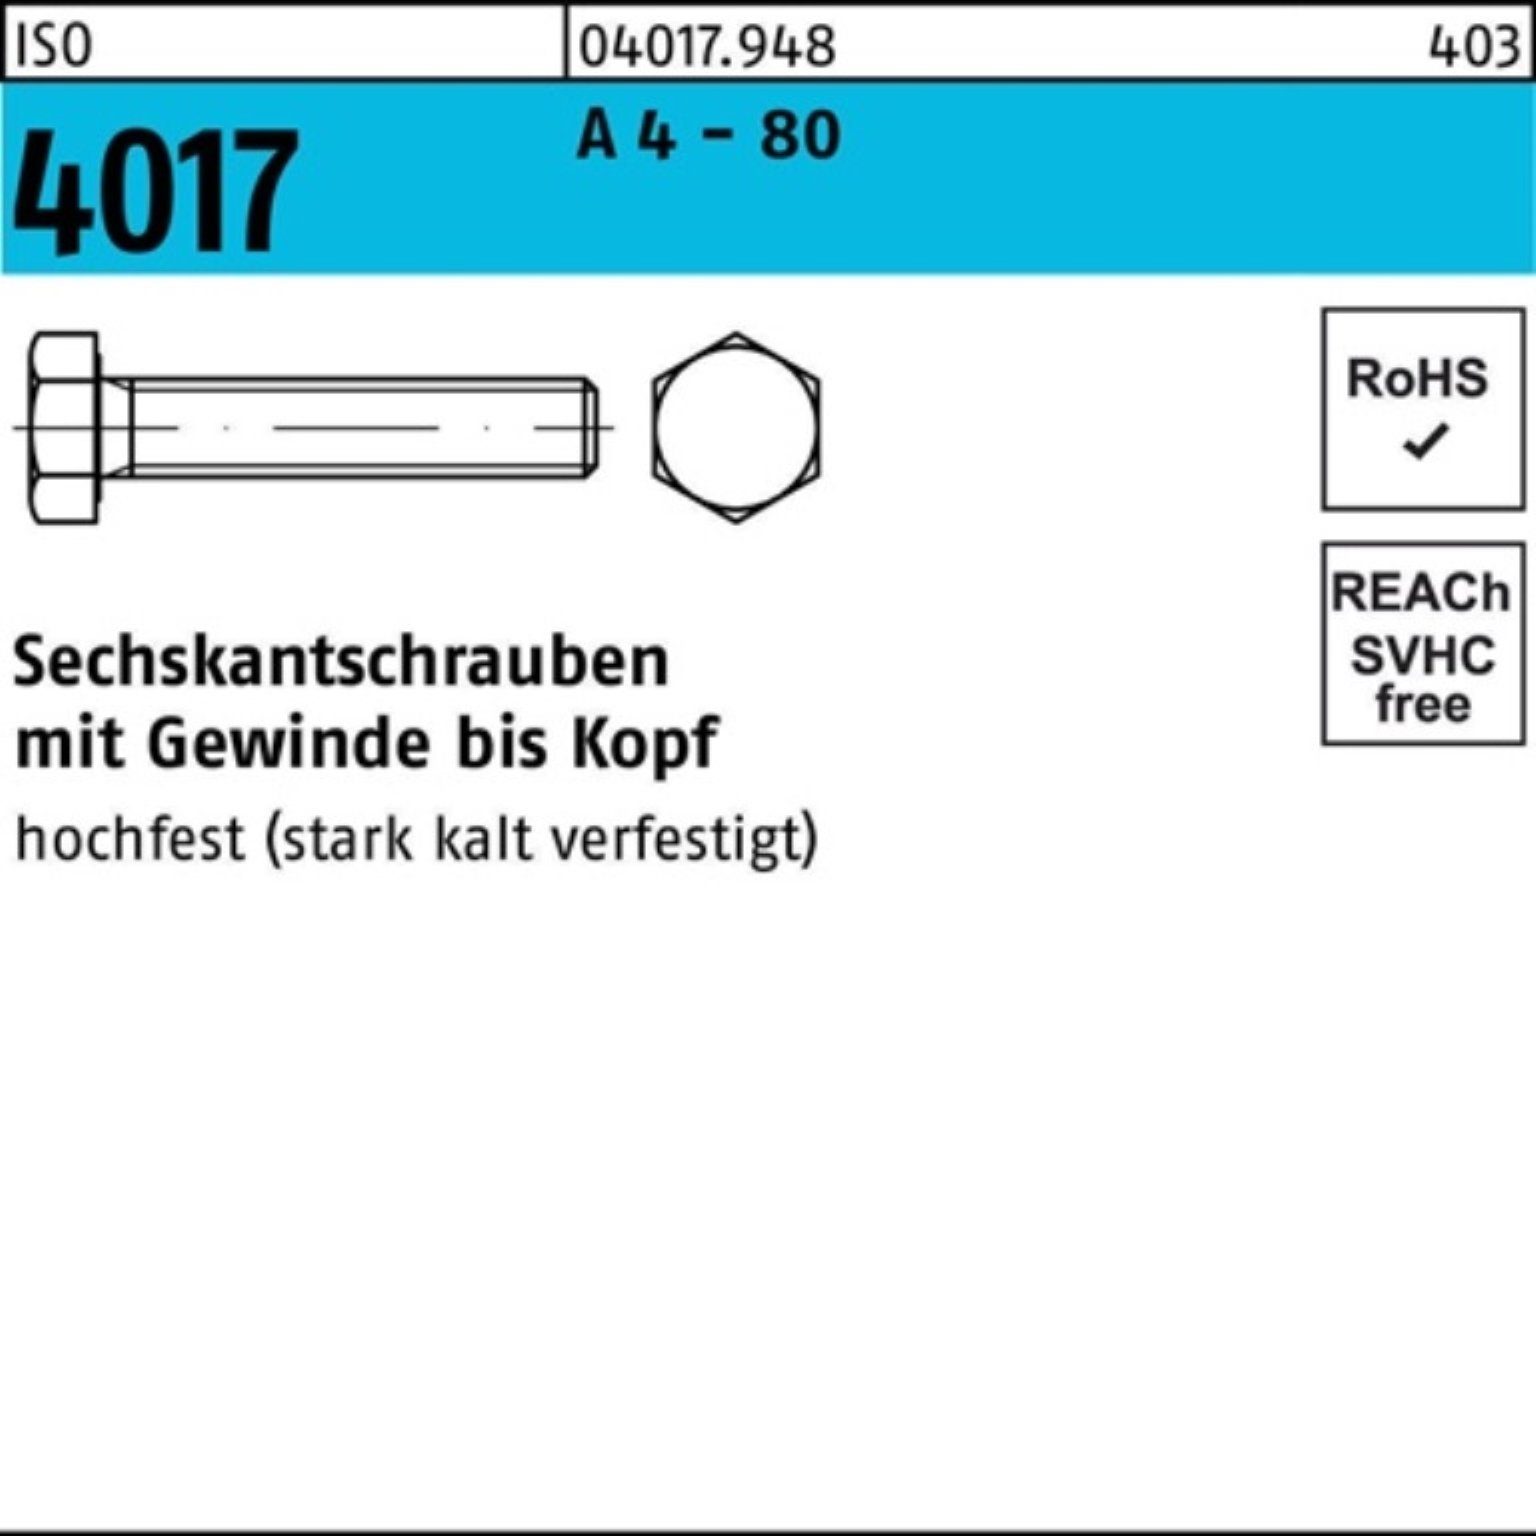 Bufab Sechskantschraube 100 12 100er 4017 ISO Pack - IS Stück 4 Sechskantschraube A M6x VG 80